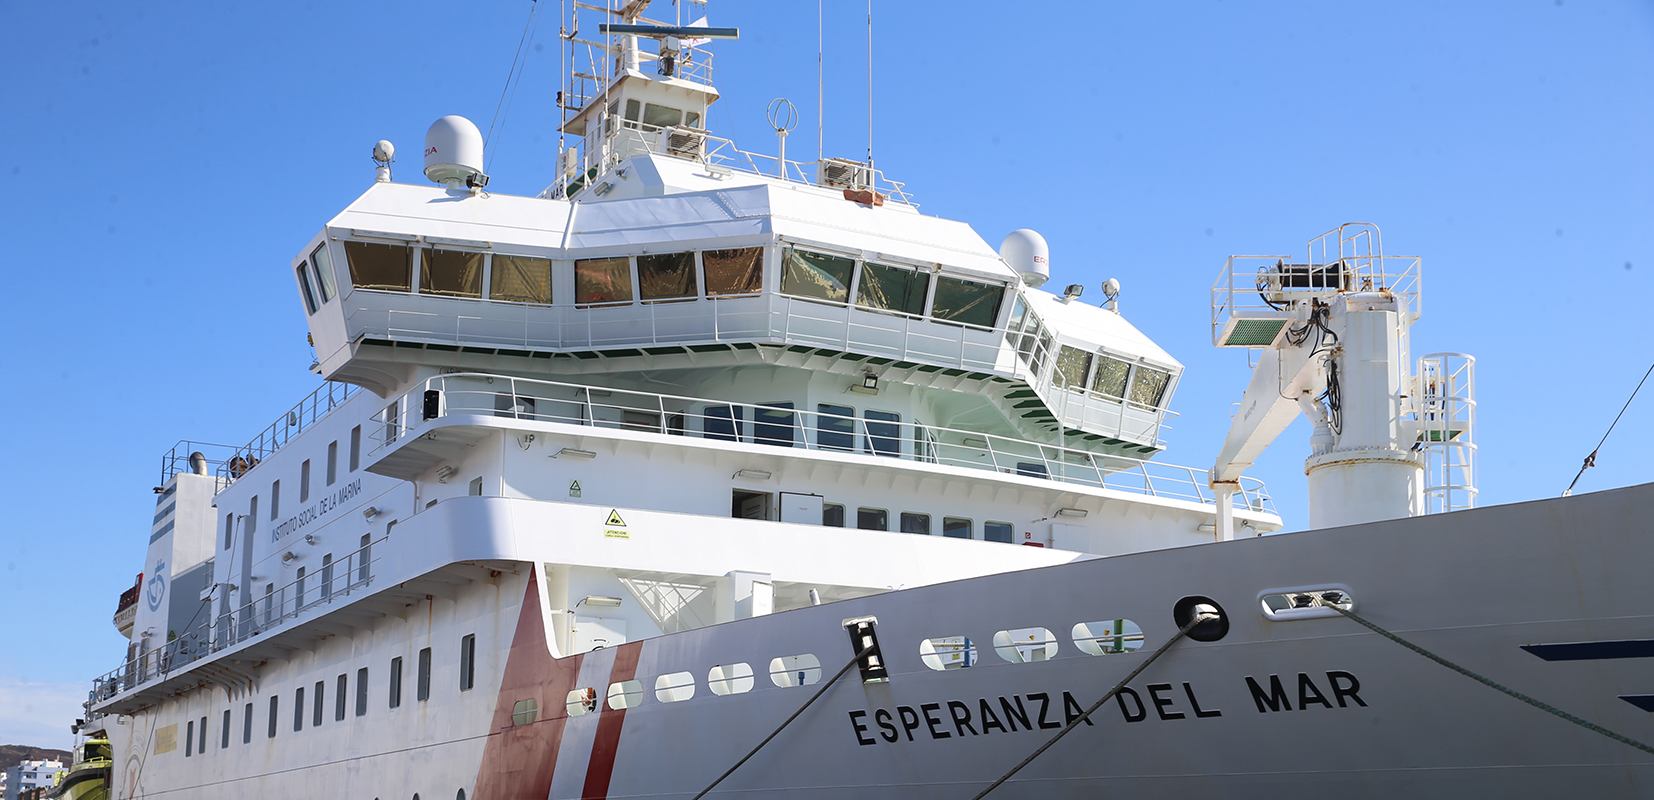 Buque hospital Esperanza del mar